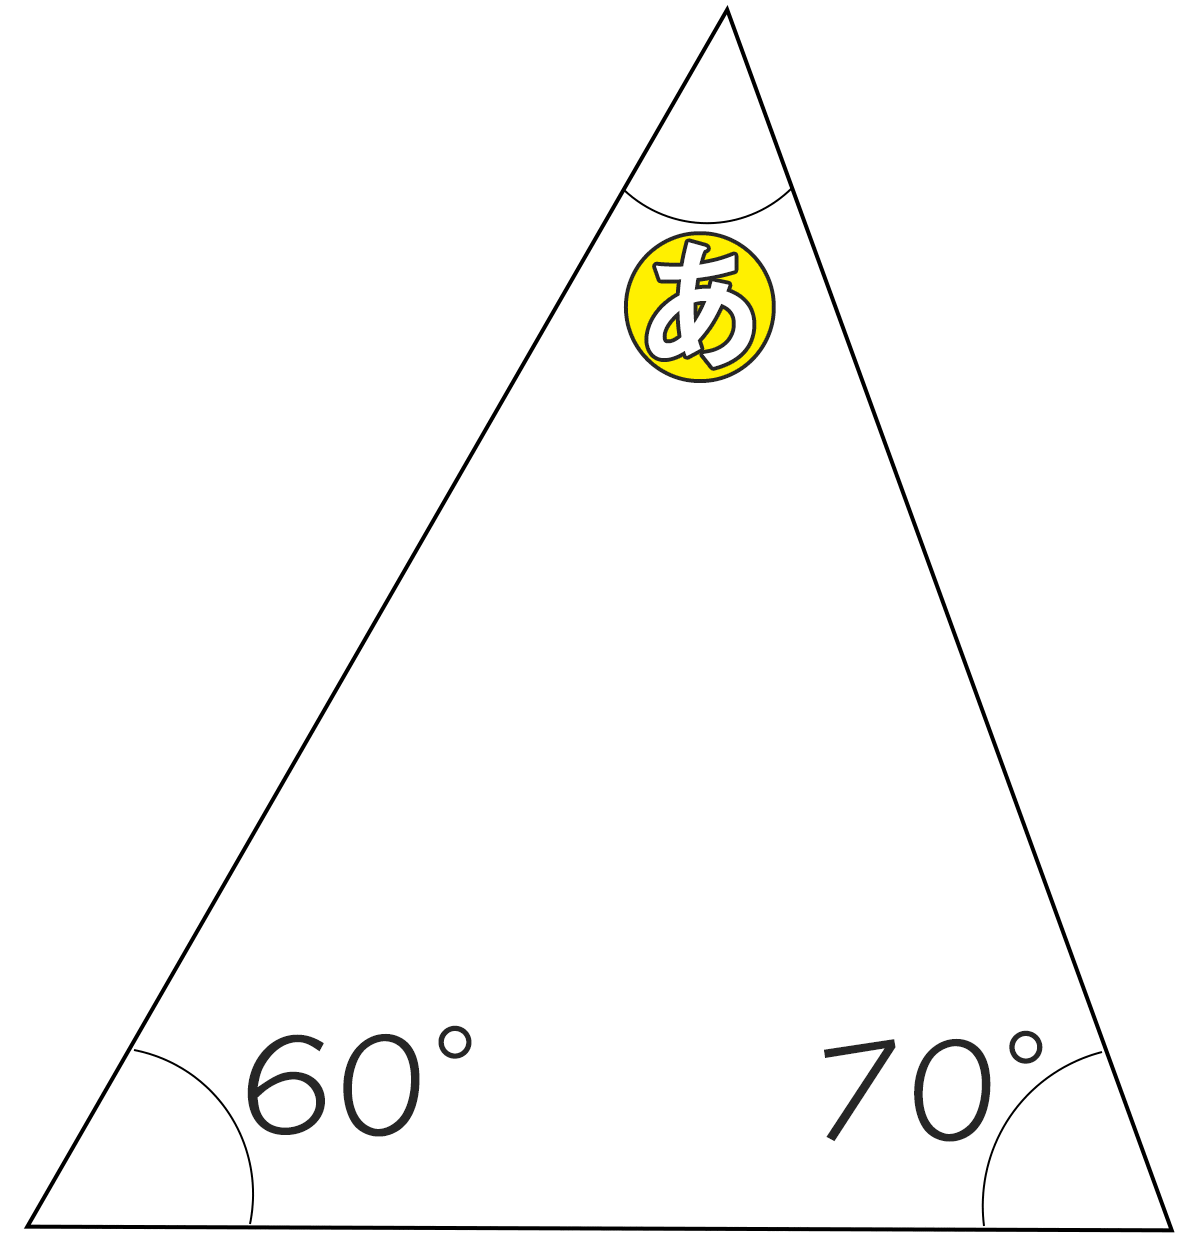 三角形の内角が60°と70°のときもうひとつの角度は何度ですか